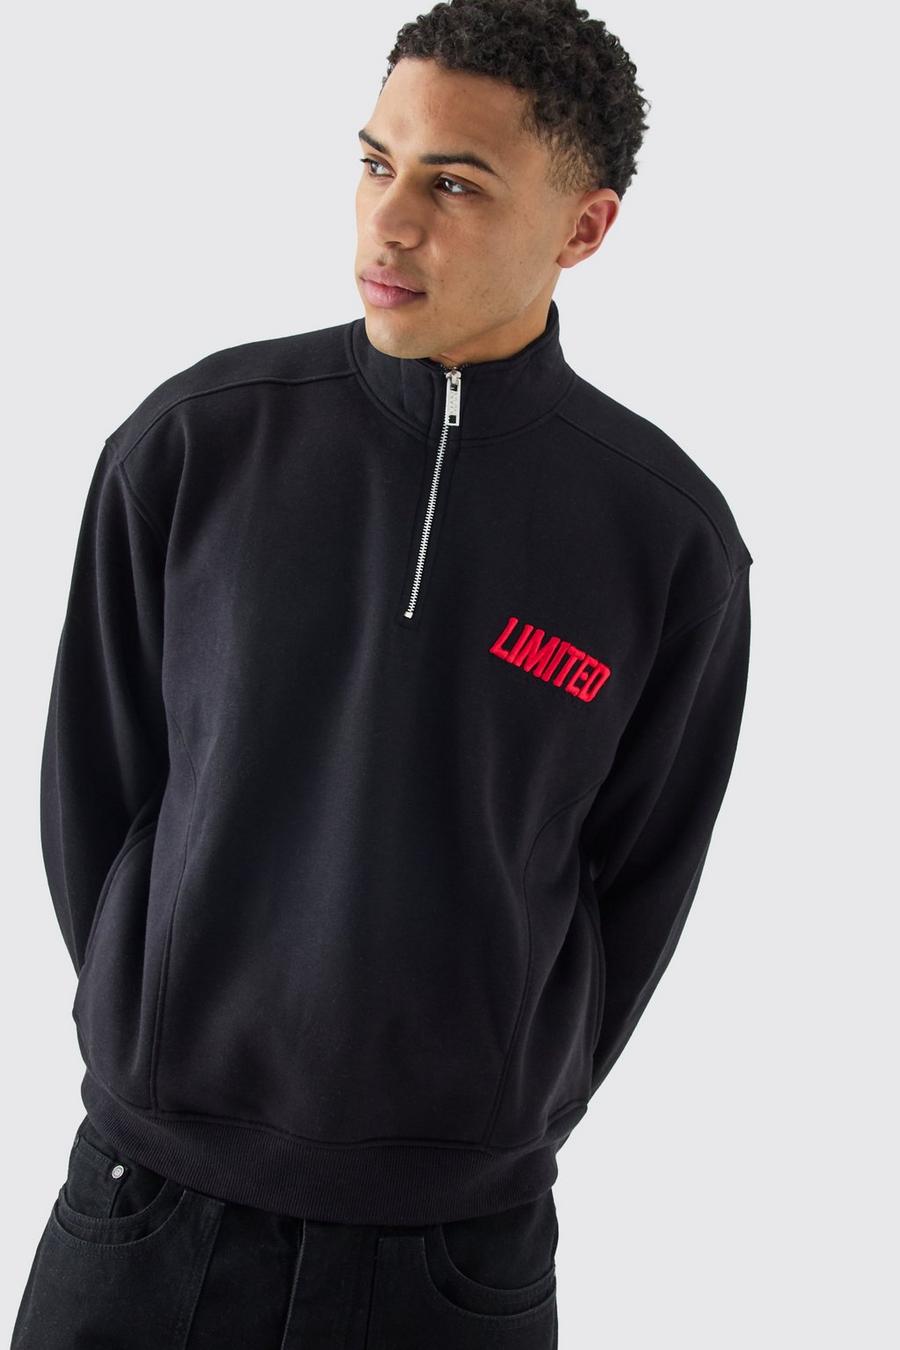 Kastiges Oversize Sweatshirt mit 1/4 Reißverschluss und 3D Stickerei, Black